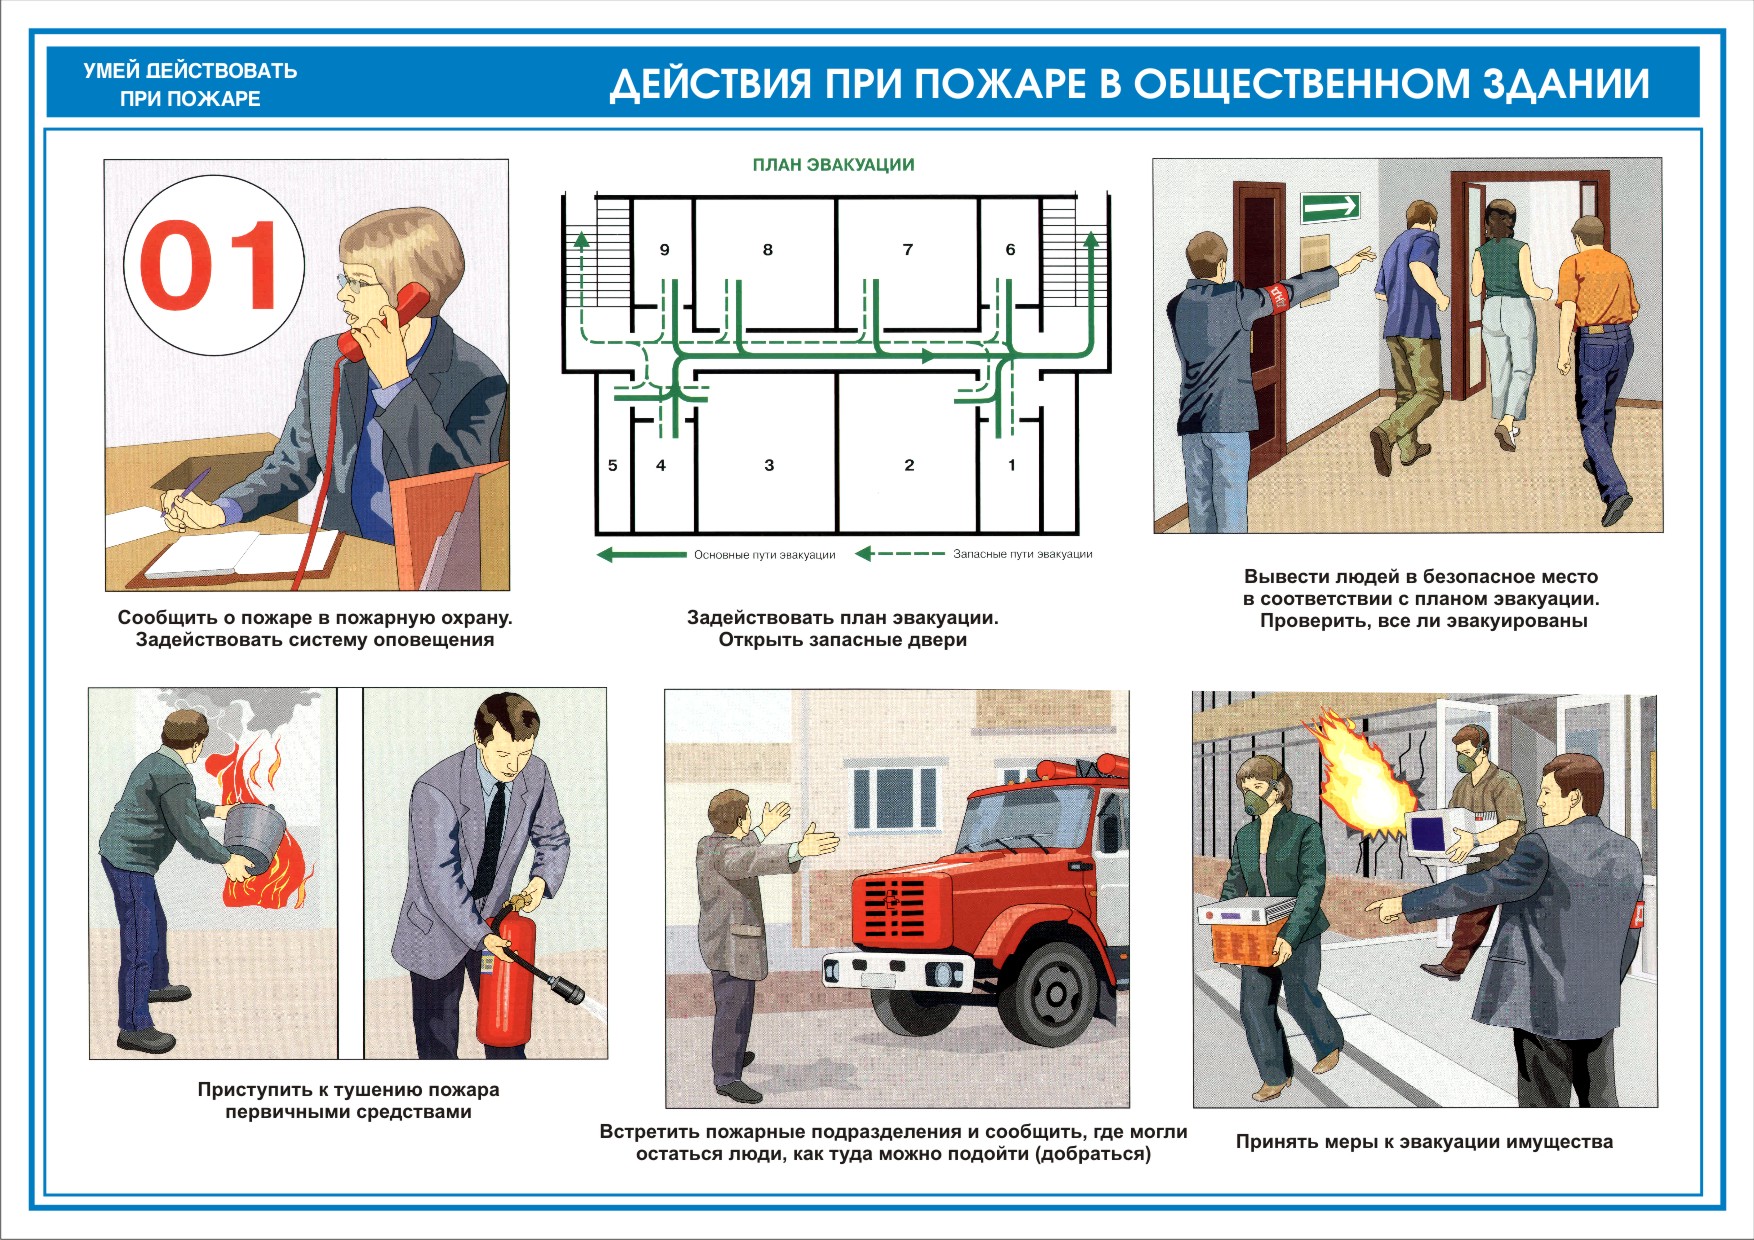 Инструкция о действиях персонала по эвакуации людей